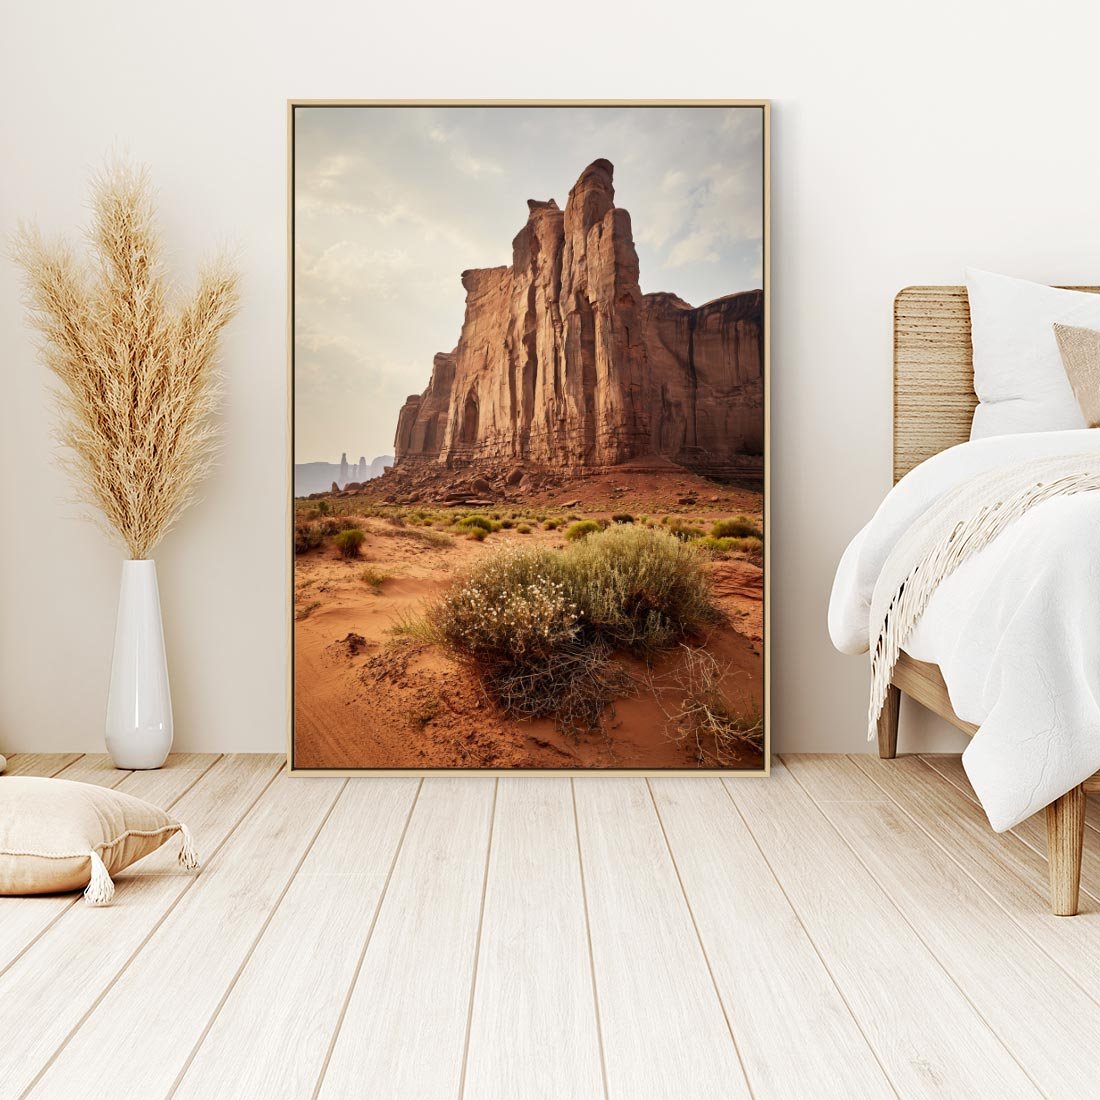 Obraz w ramie 50x70 - Pejzaż pustynnego kanionu - pustynia, kanion - rama drewno